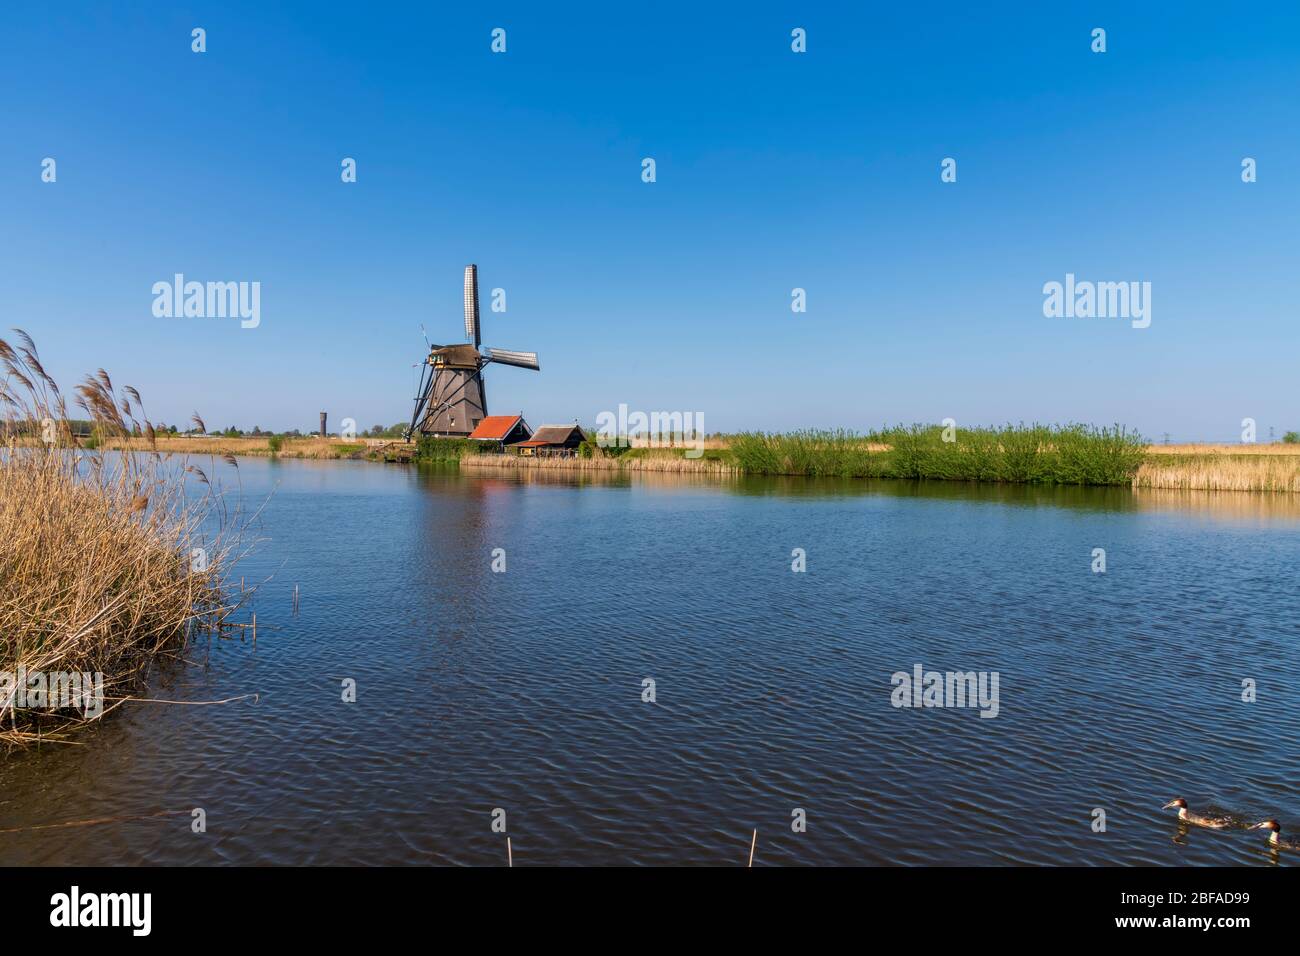 Vue aérienne d'un ancien moulin à vent traditionnel néerlandais sur la campagne rurale des Pays-Bas avec une digue, des canaux, un pont et des champs. Banque D'Images